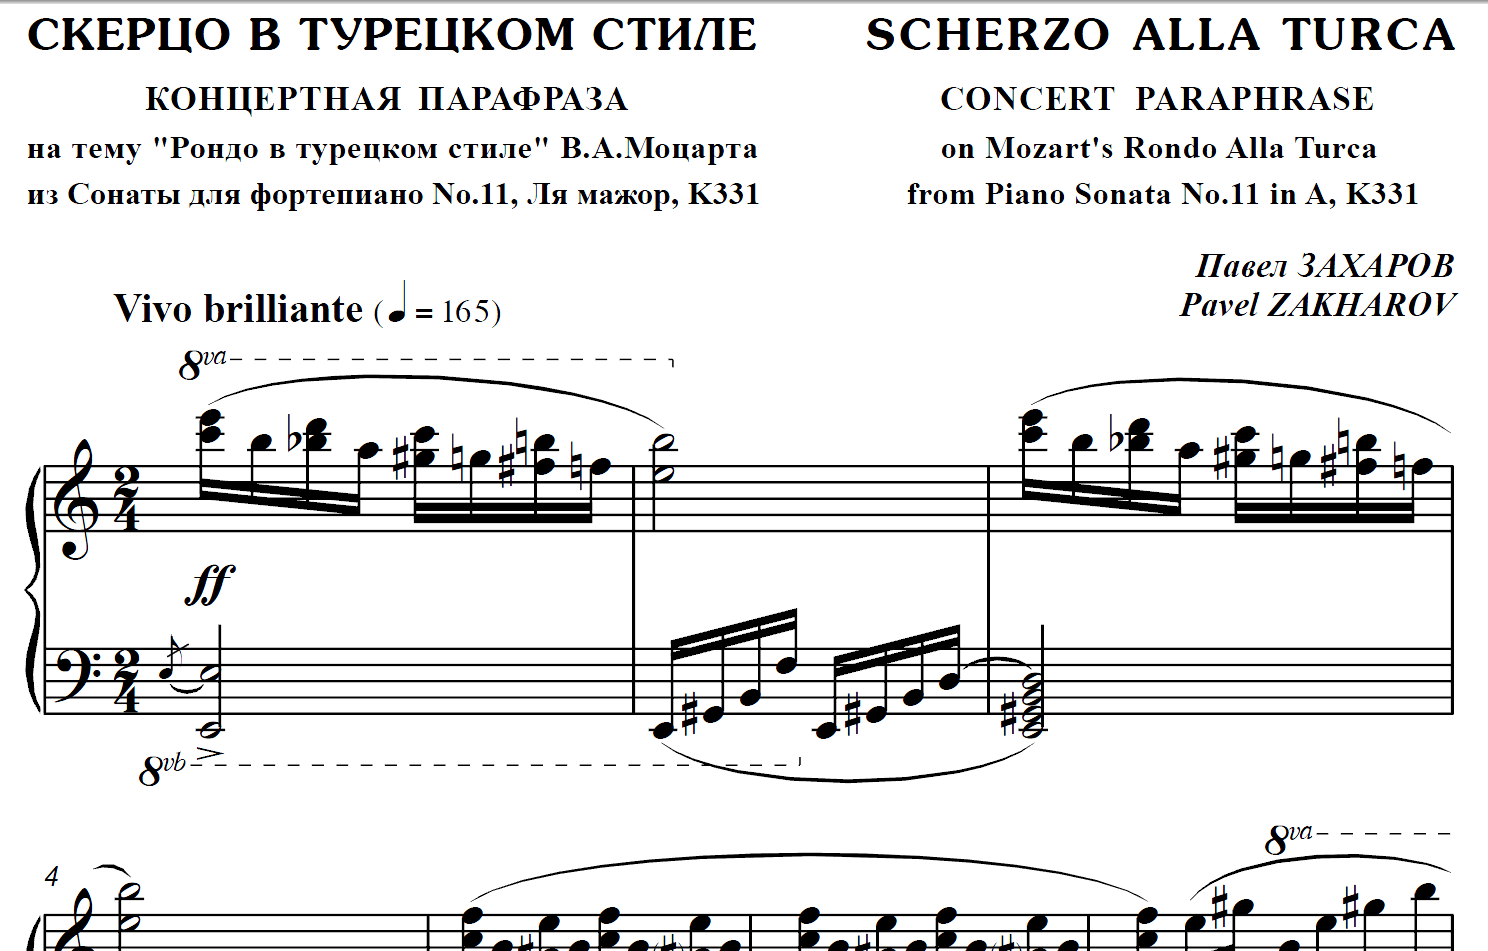 4s29 Scherzo Alla Turca, PAVEL ZAKHAROV / piano